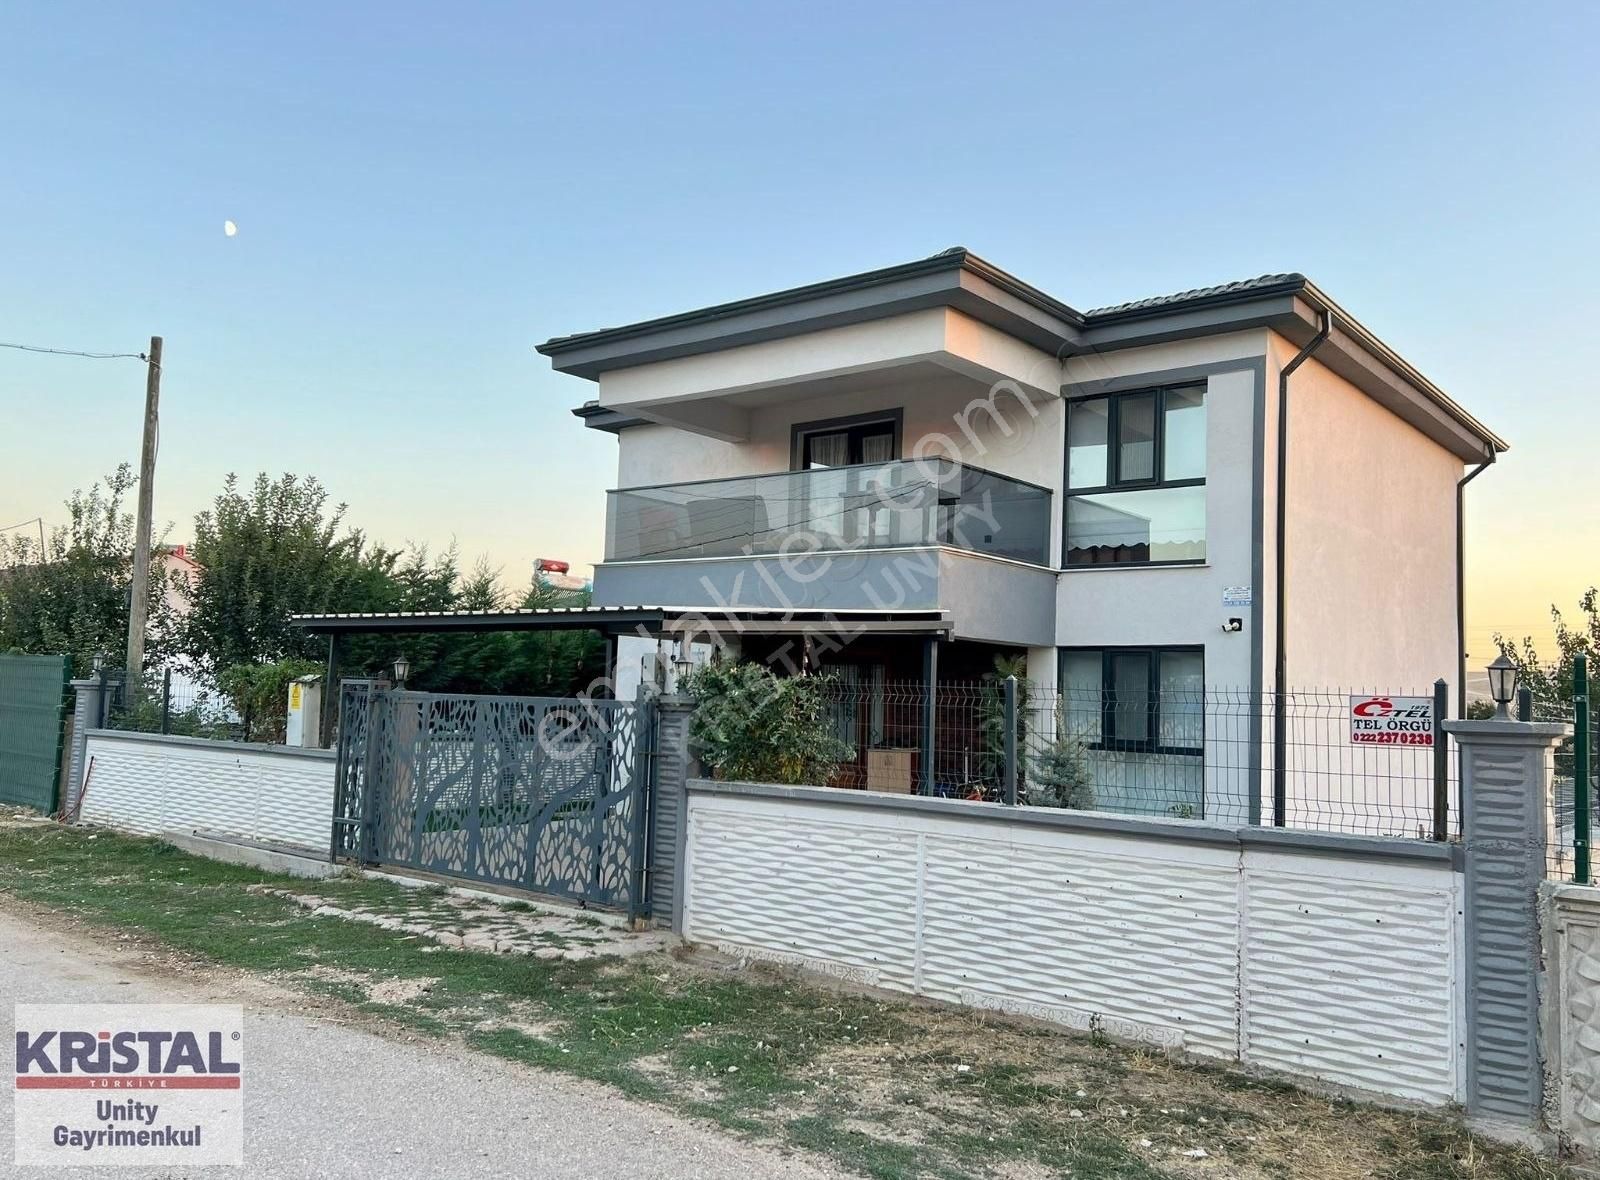 Tepebaşı Hisar Satılık Villa KRİSTAL UNITY'DEN ÇUKURHİSAR'DA SATILIK EŞYALI 4+1 LÜKS VİLLA